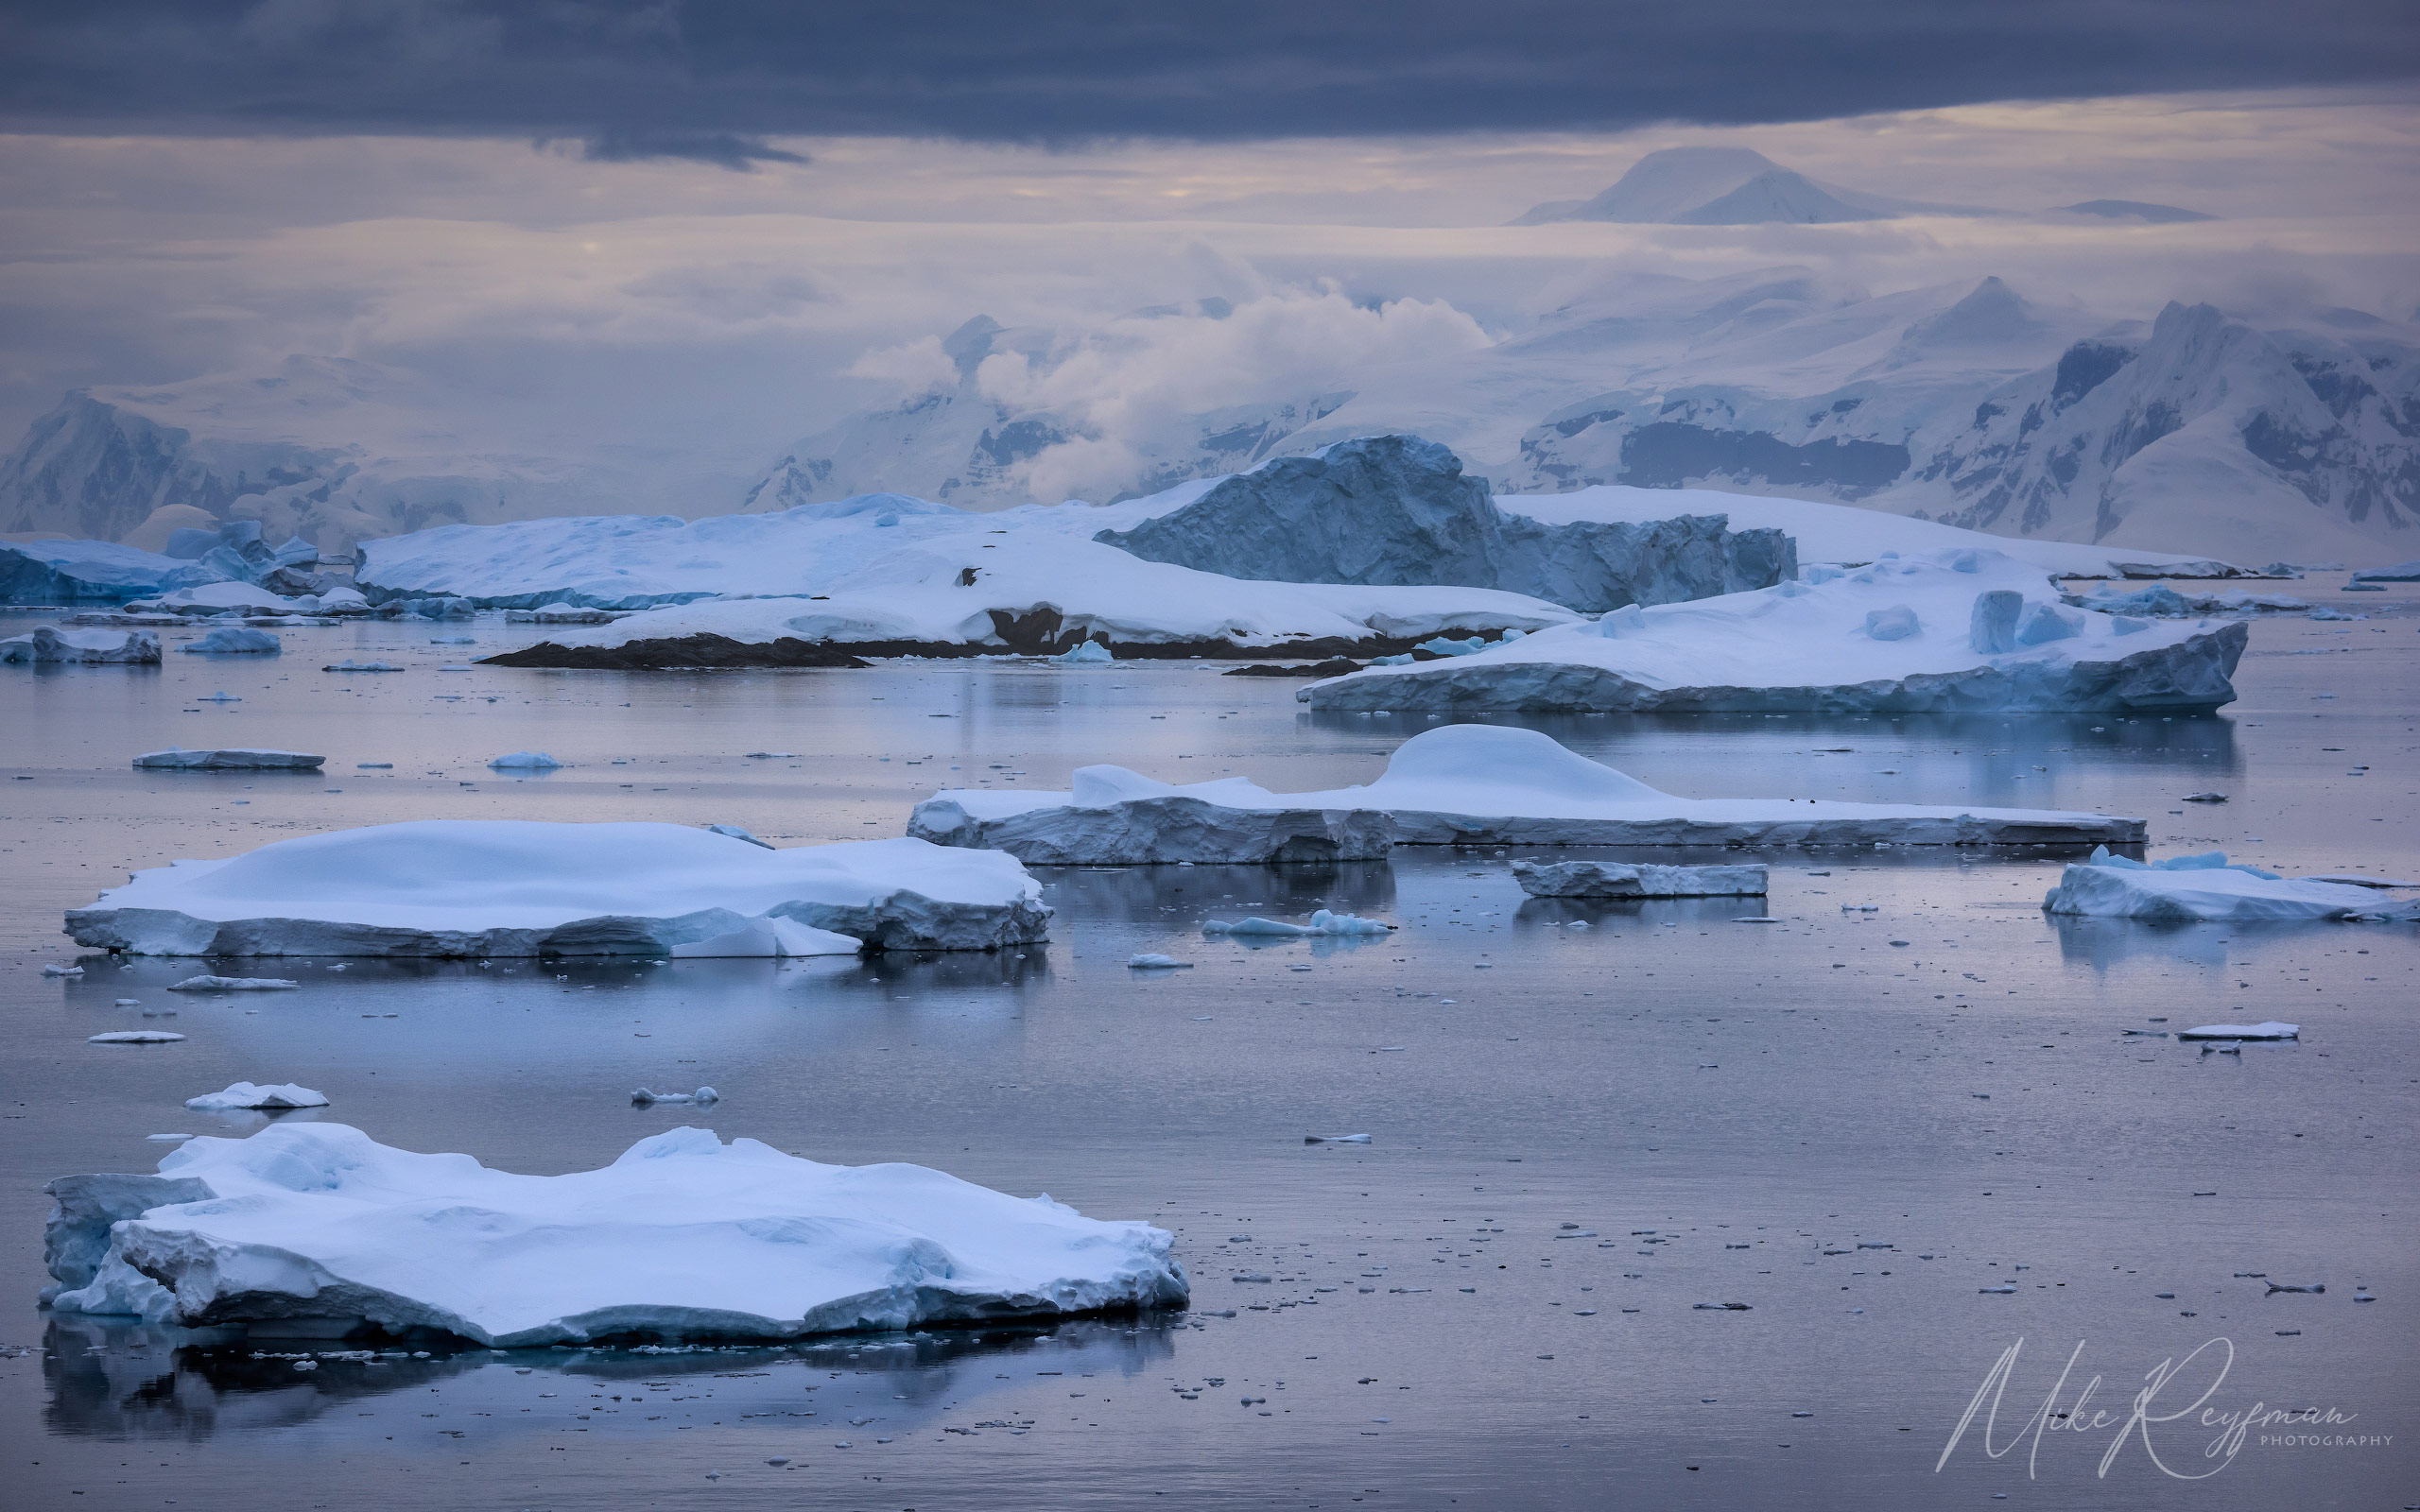  Antarctic_34 - Antarctica-Under-Sail-2024-phototour - Mike Reyfman Photography